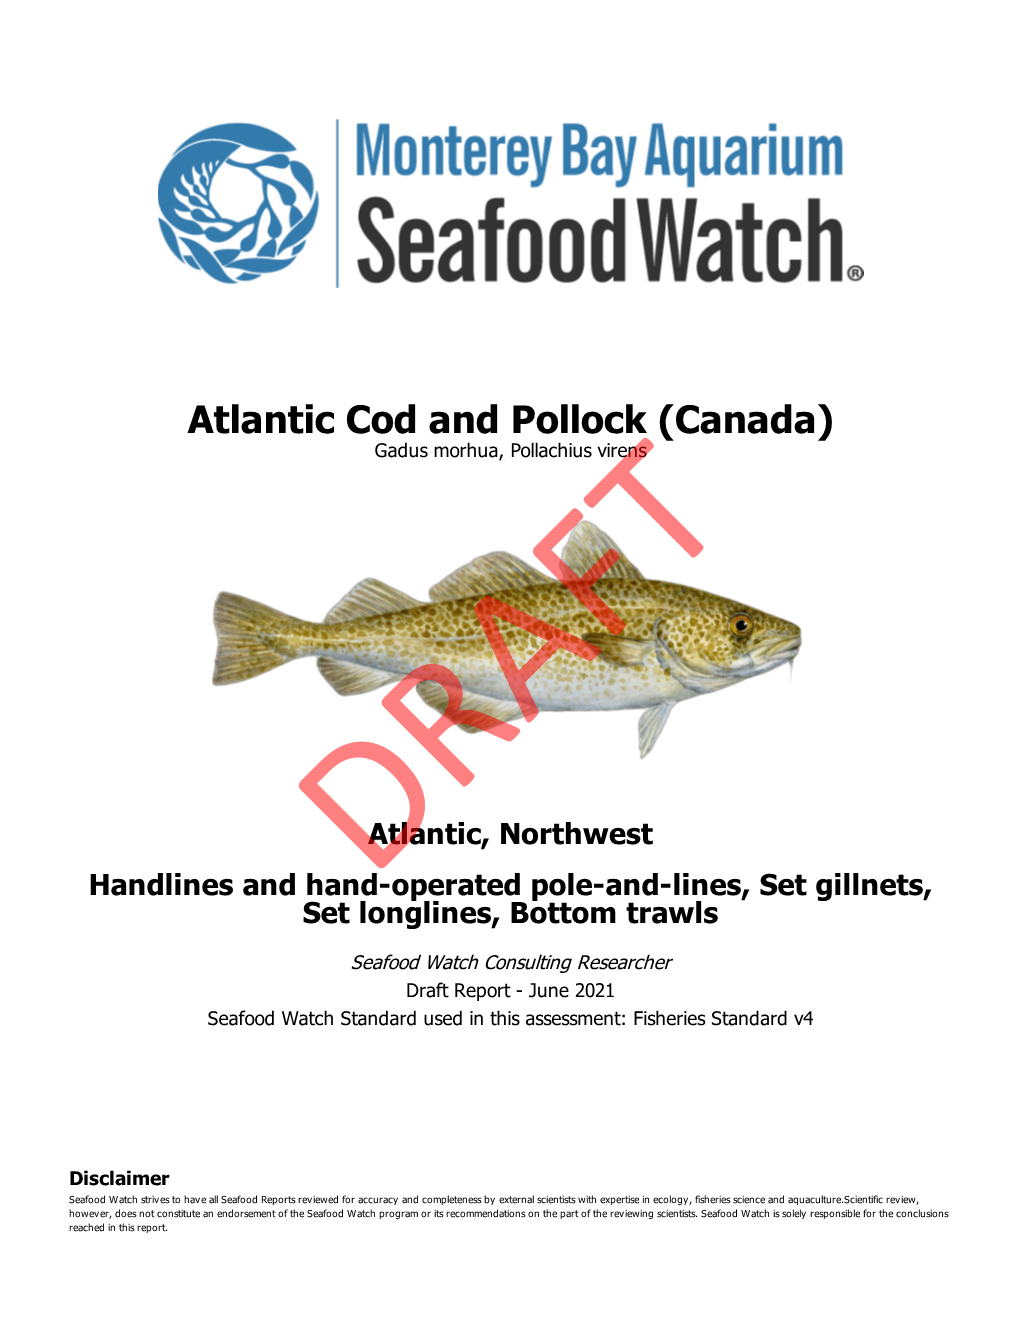 Atlantic Cod and Pollock (Canada) Gadus Morhua, Pollachius Virens FT